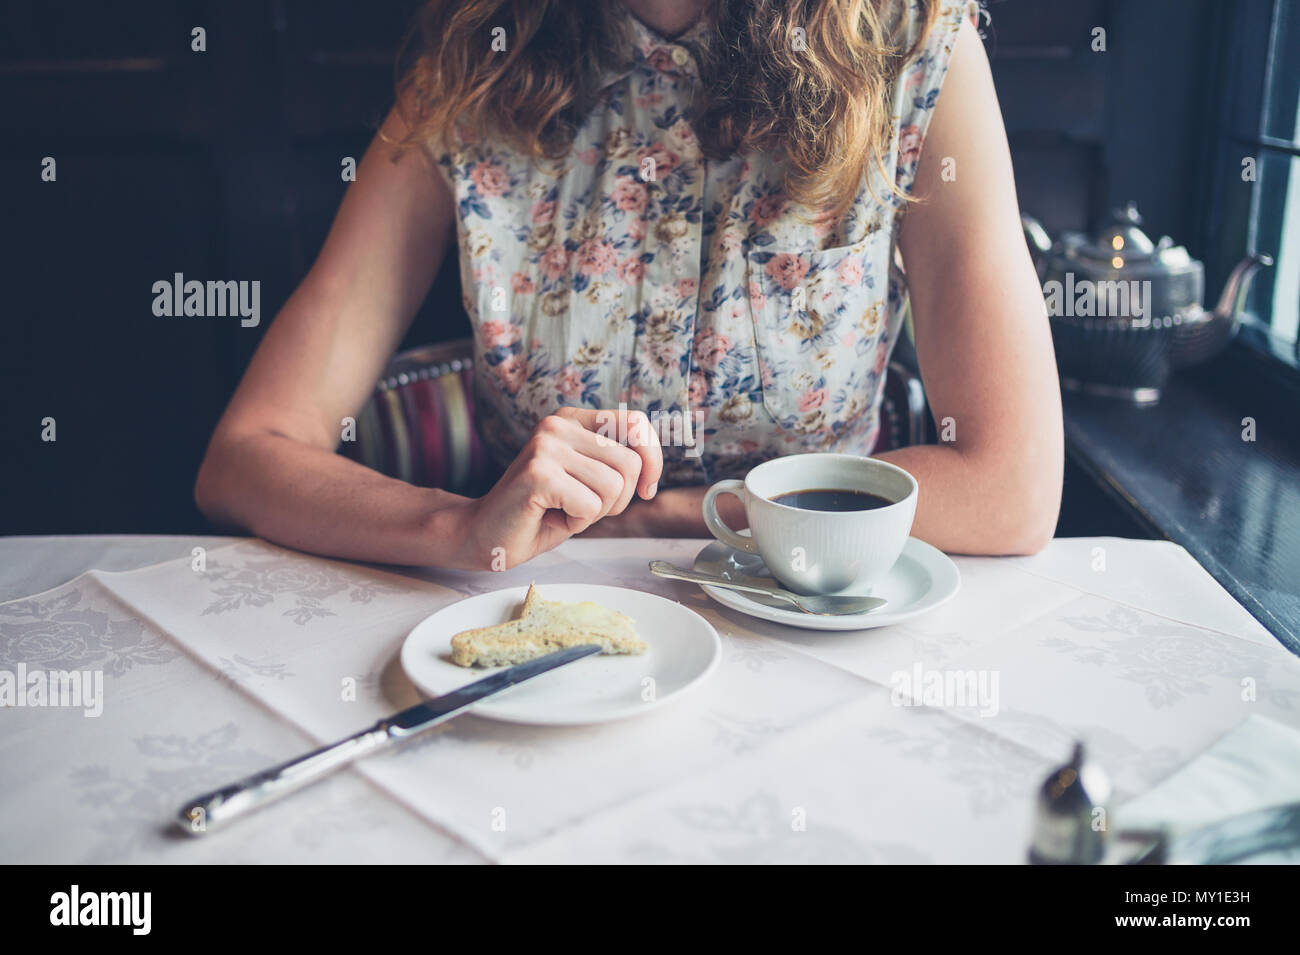 Une jeune femme est en train de manger du pain grillé avec du beurre à une table à manger Banque D'Images